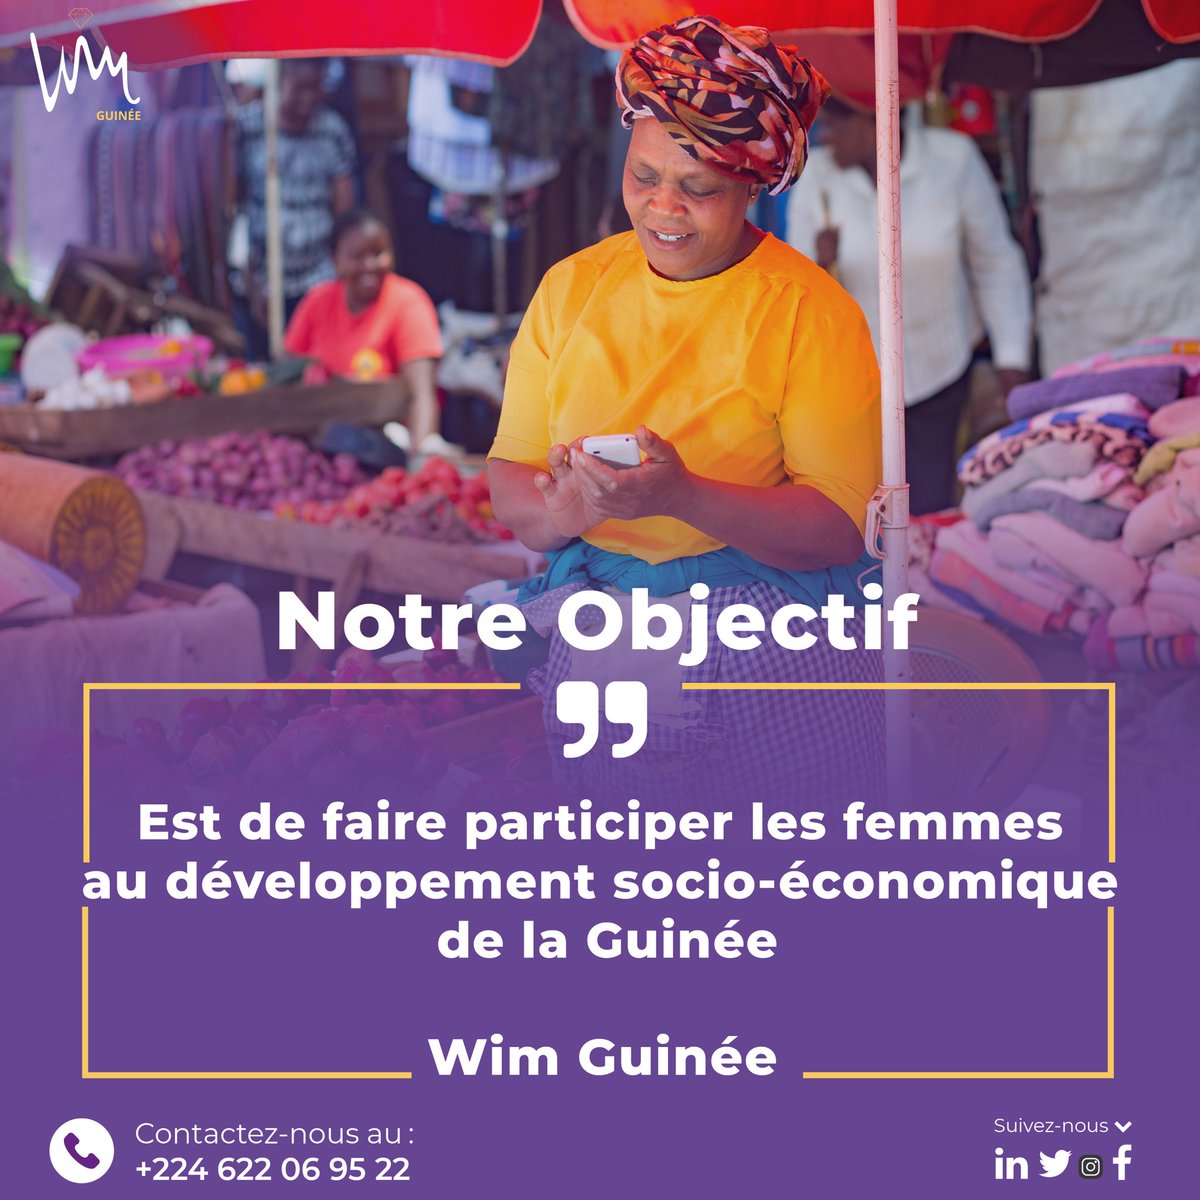 WIM Guinée | Découvrez Notre Objectif

Notre objectif est de faire participer les femmes au développement socio-économique de la Guinée.

#womeninmining #MiningEquality #MiningLeadership #IFCConnectedCommunities #CommunityBusinesses #GenderInclusion #IFCGender